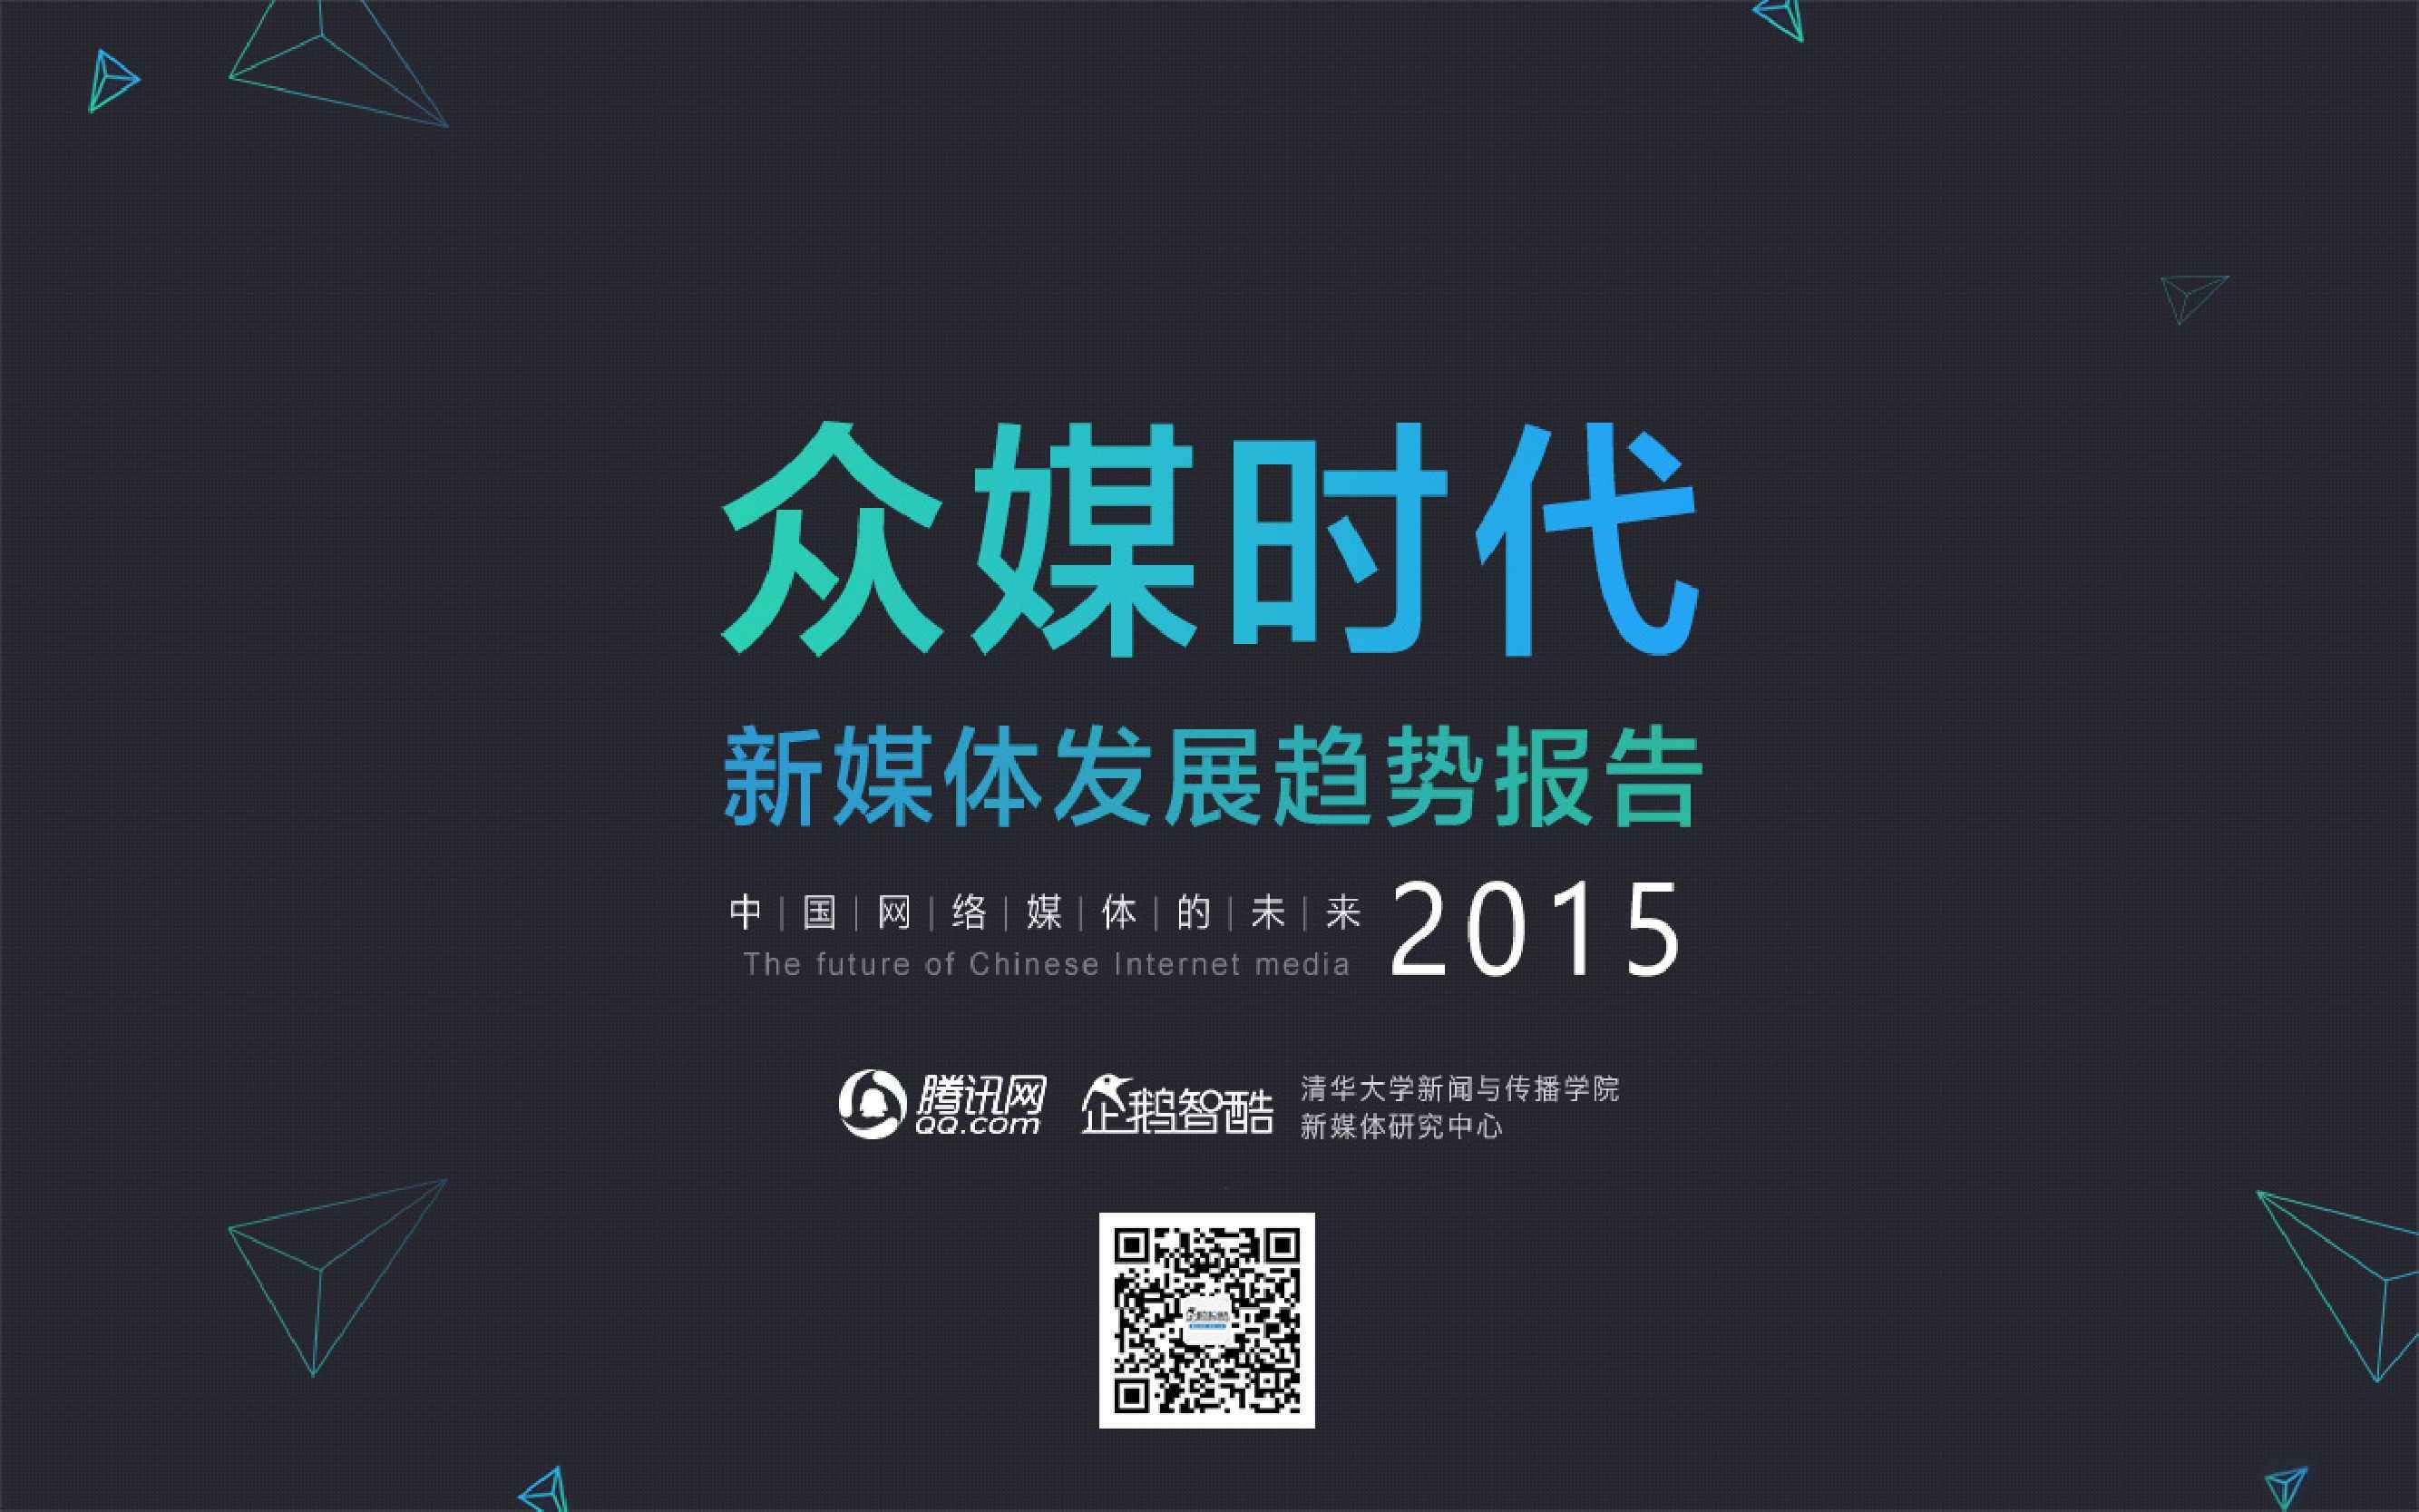 新媒体发展趋势报告：中国网络媒体的未来（2015）_000001